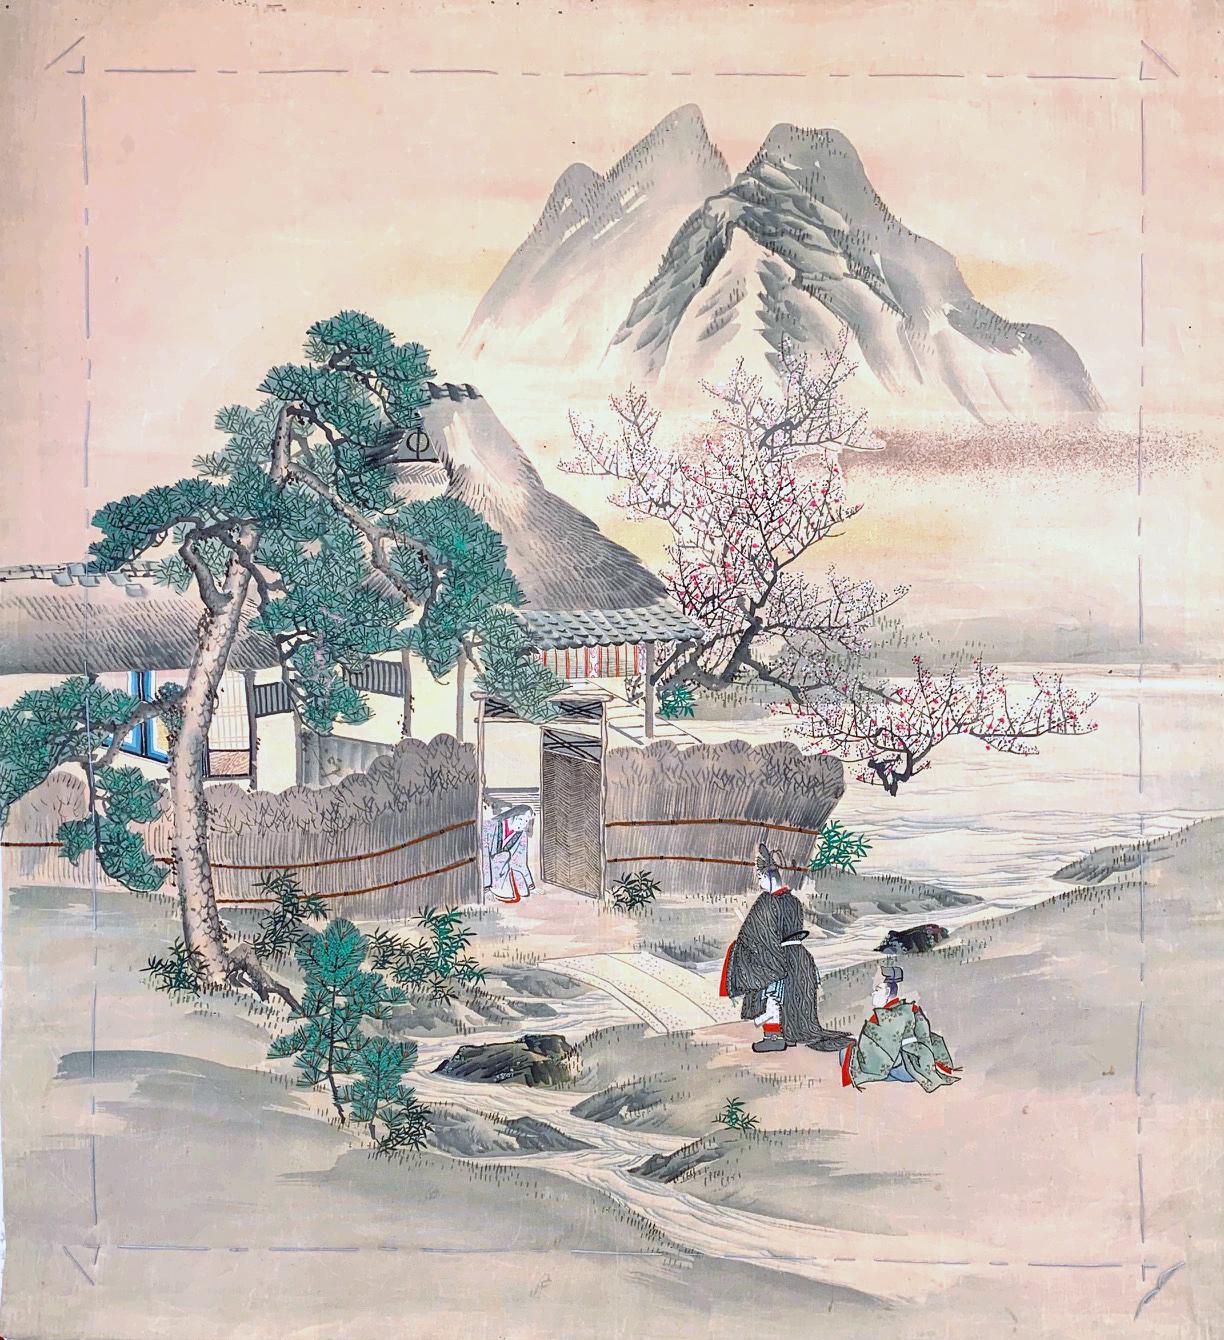 Panneau Fukusa en soie japonaise, datant de la fin du XIXe siècle et du début du XXe siècle, de la période Meiji. La façade a été magnifiquement décorée avec le Yuzen-zome, une technique de teinture par résistance à forte intensité de travail,